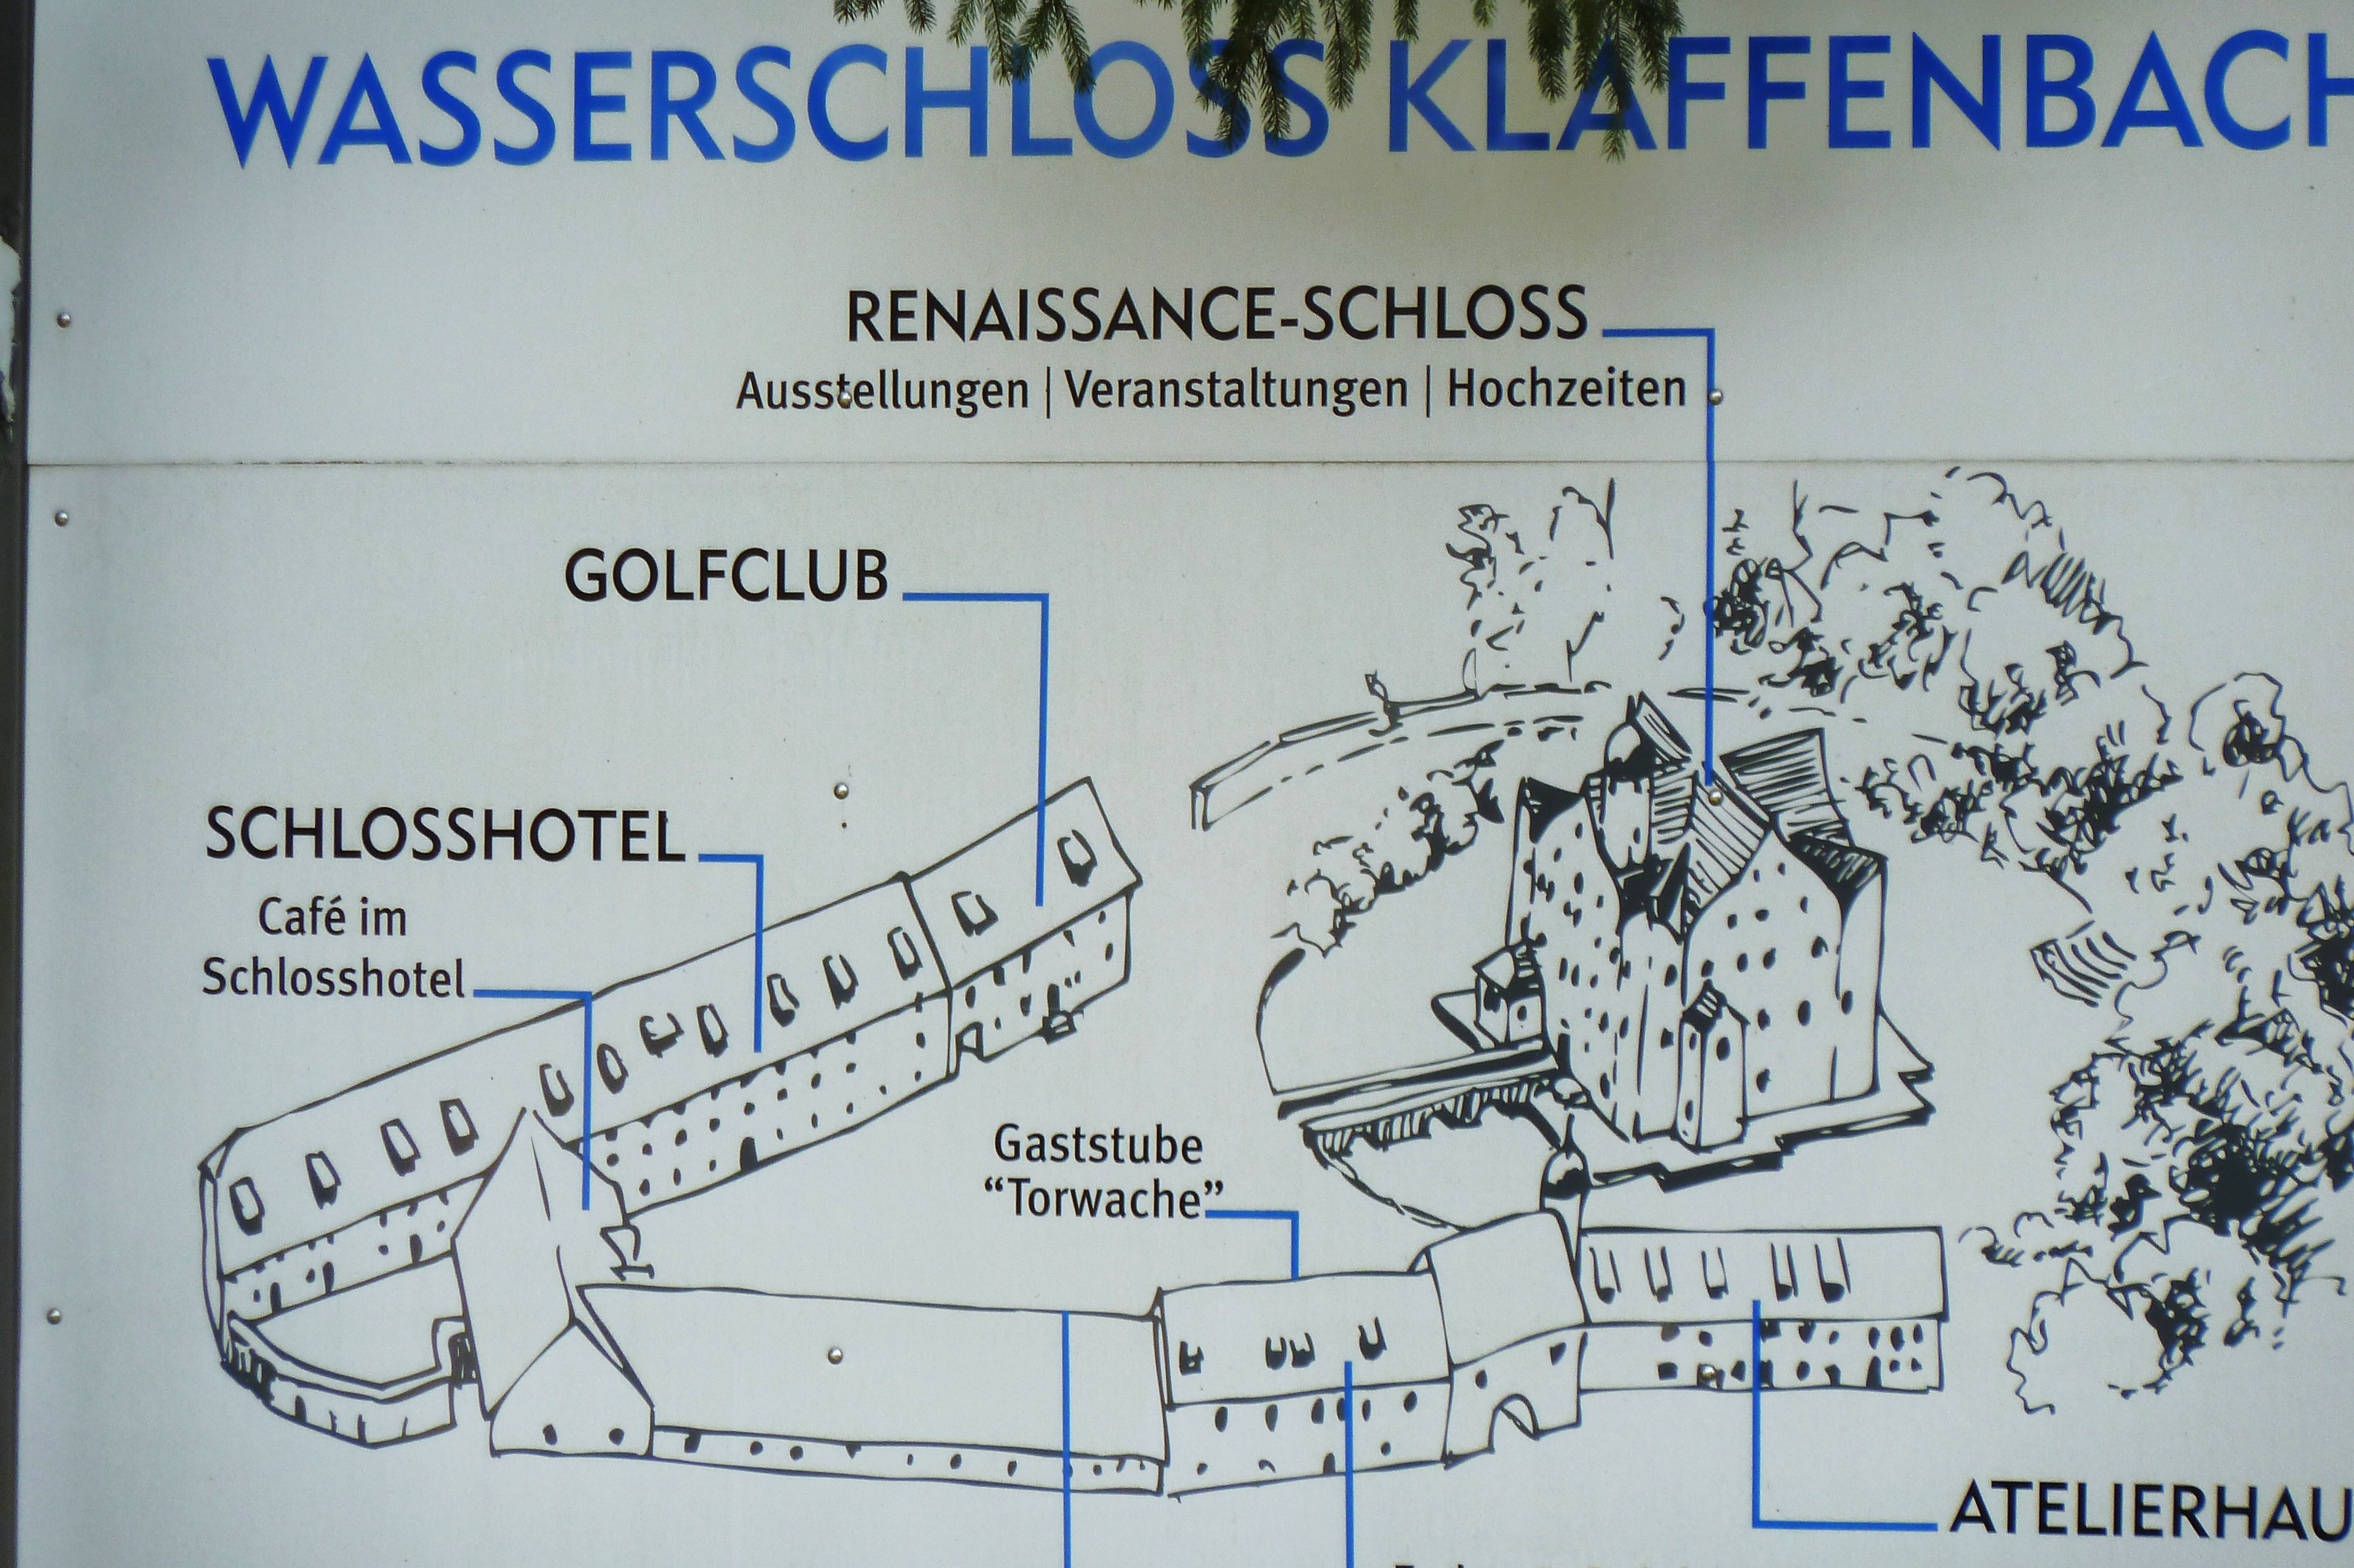 Wasserschloss Klaffenbach bei Chemnitz
Gesamtanlage Plan.